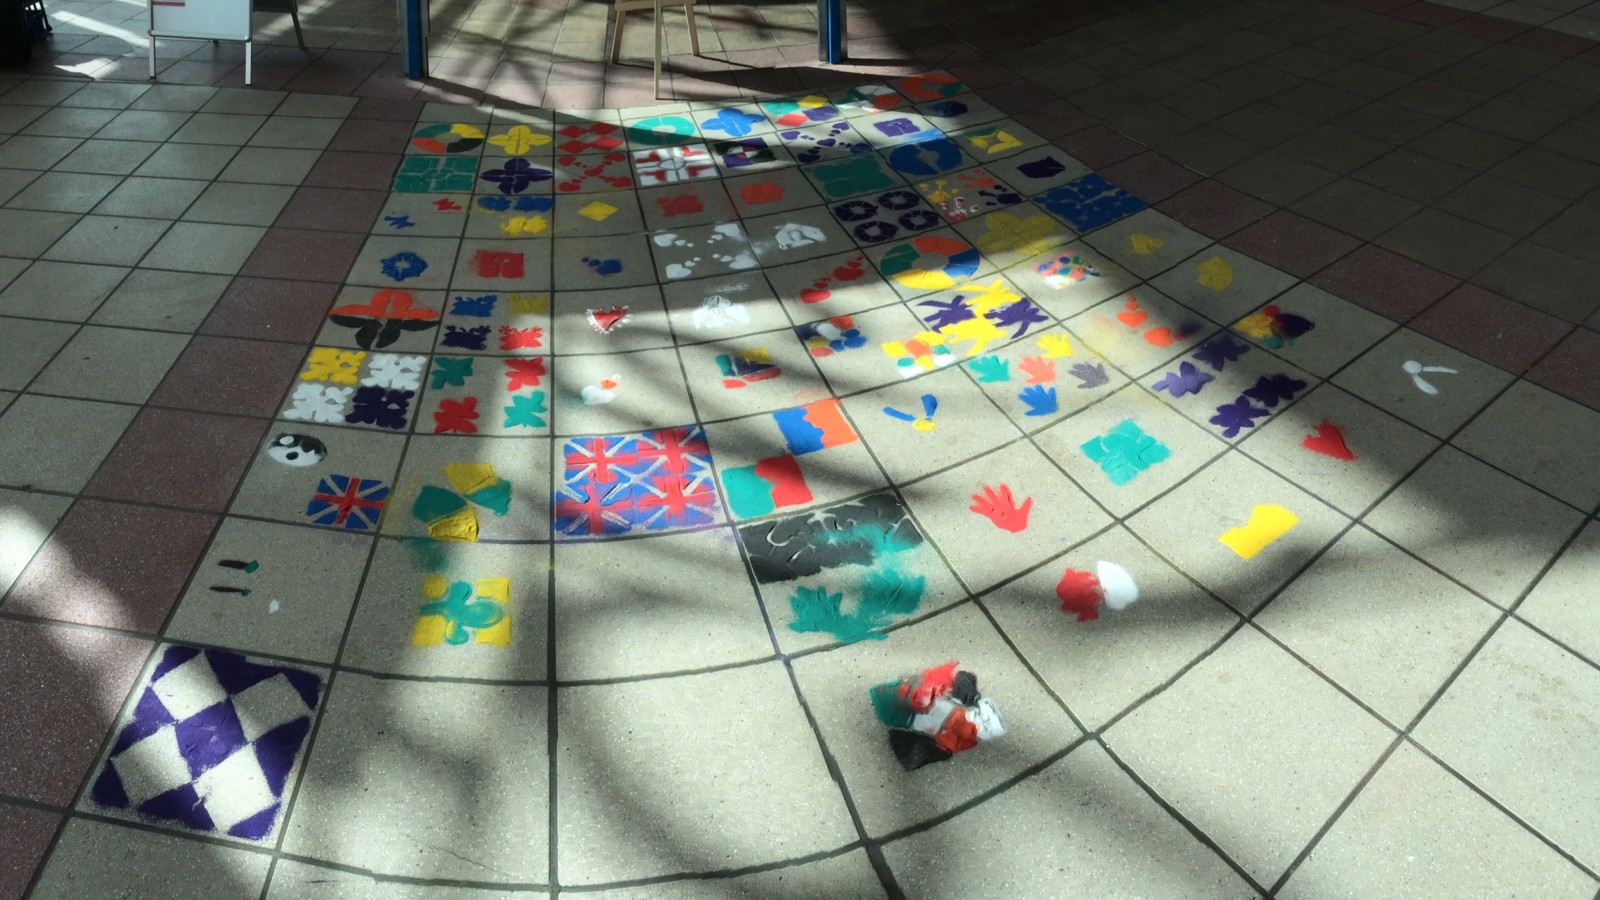 A colourful mosaic on floor tiles.